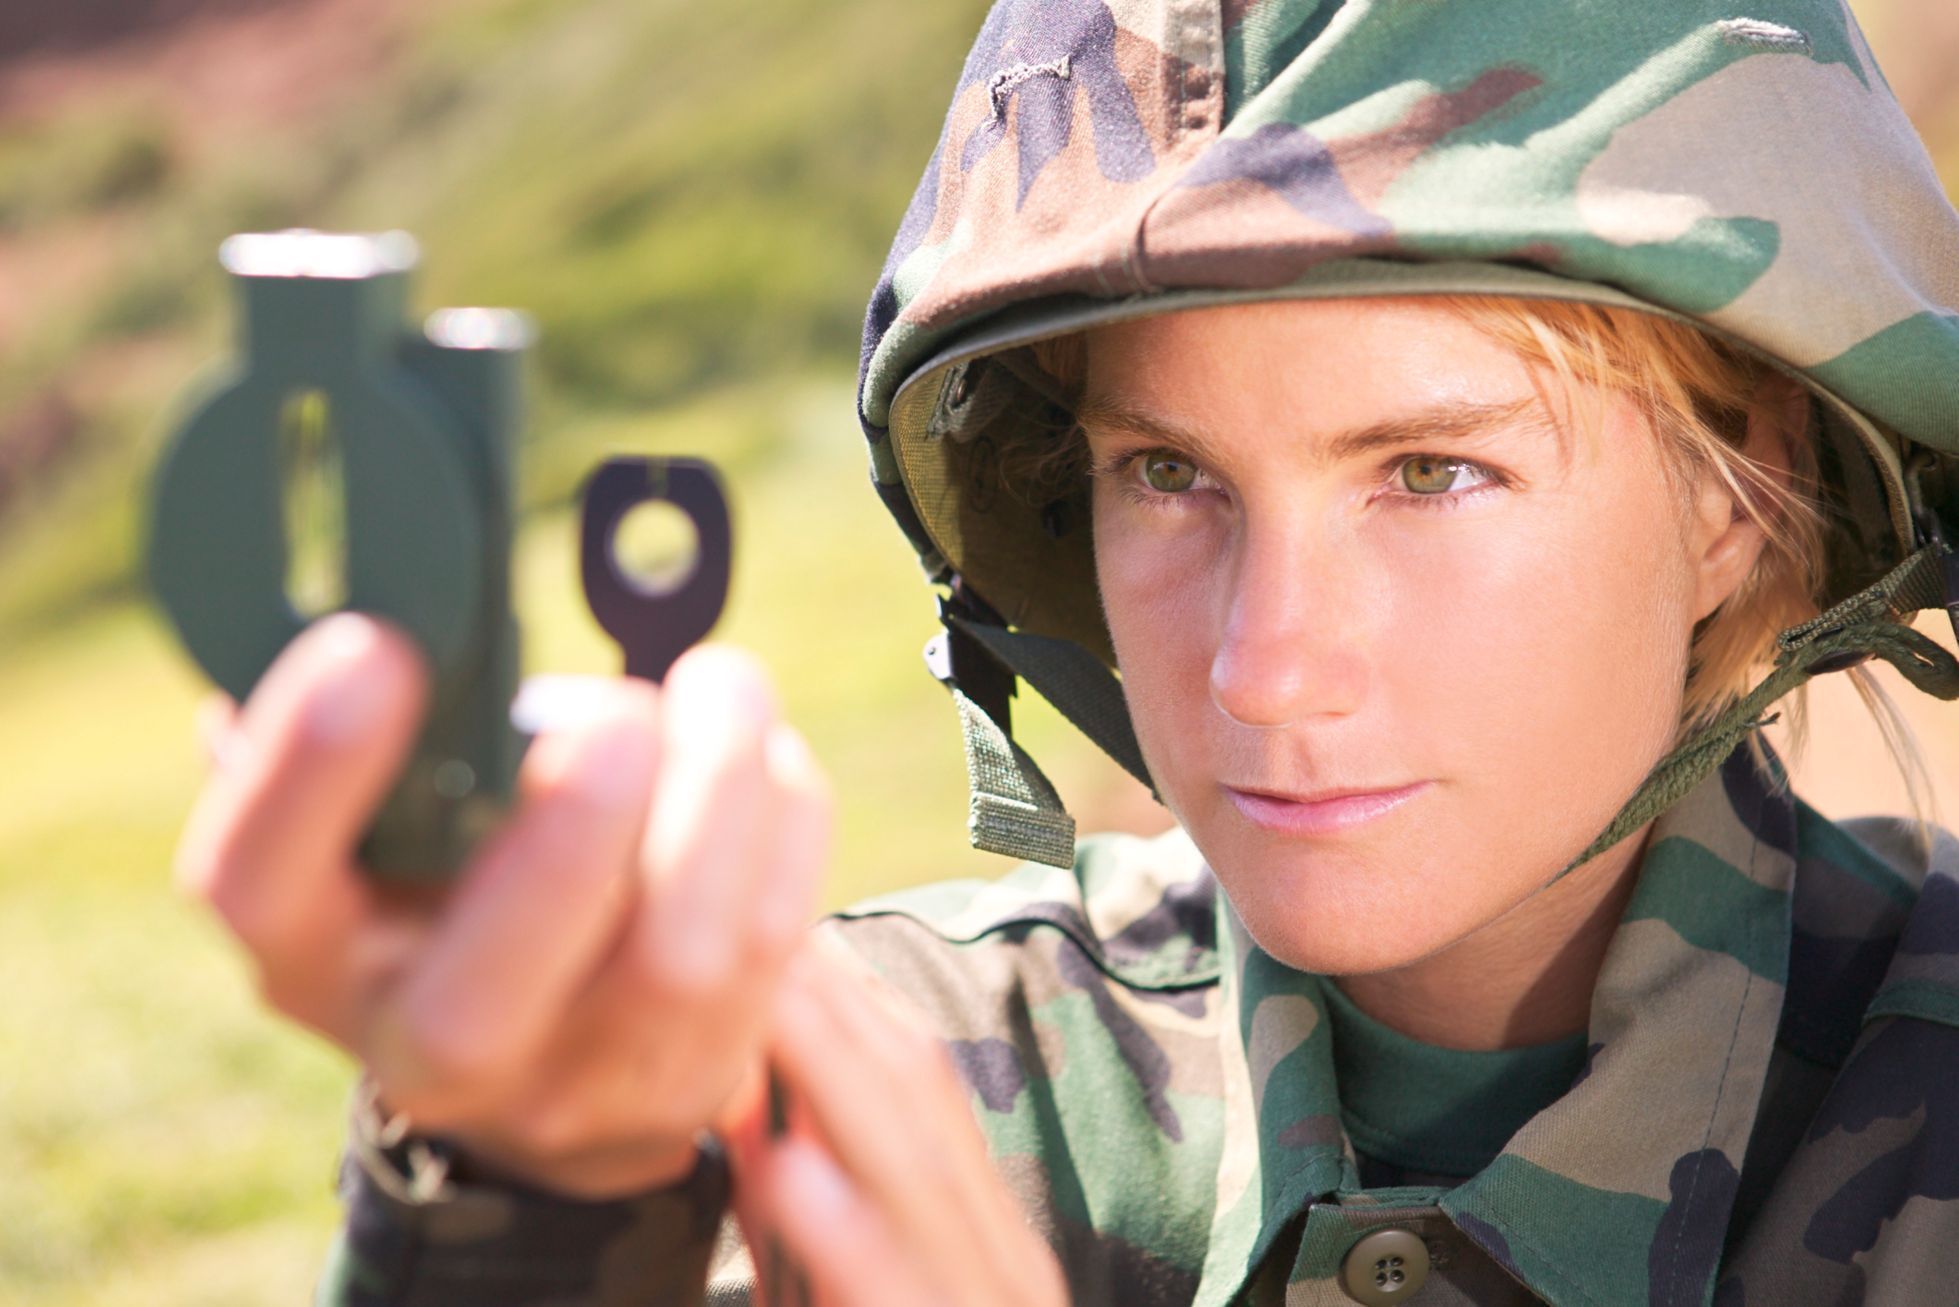 žena, armáda, voják, ilustrační foto